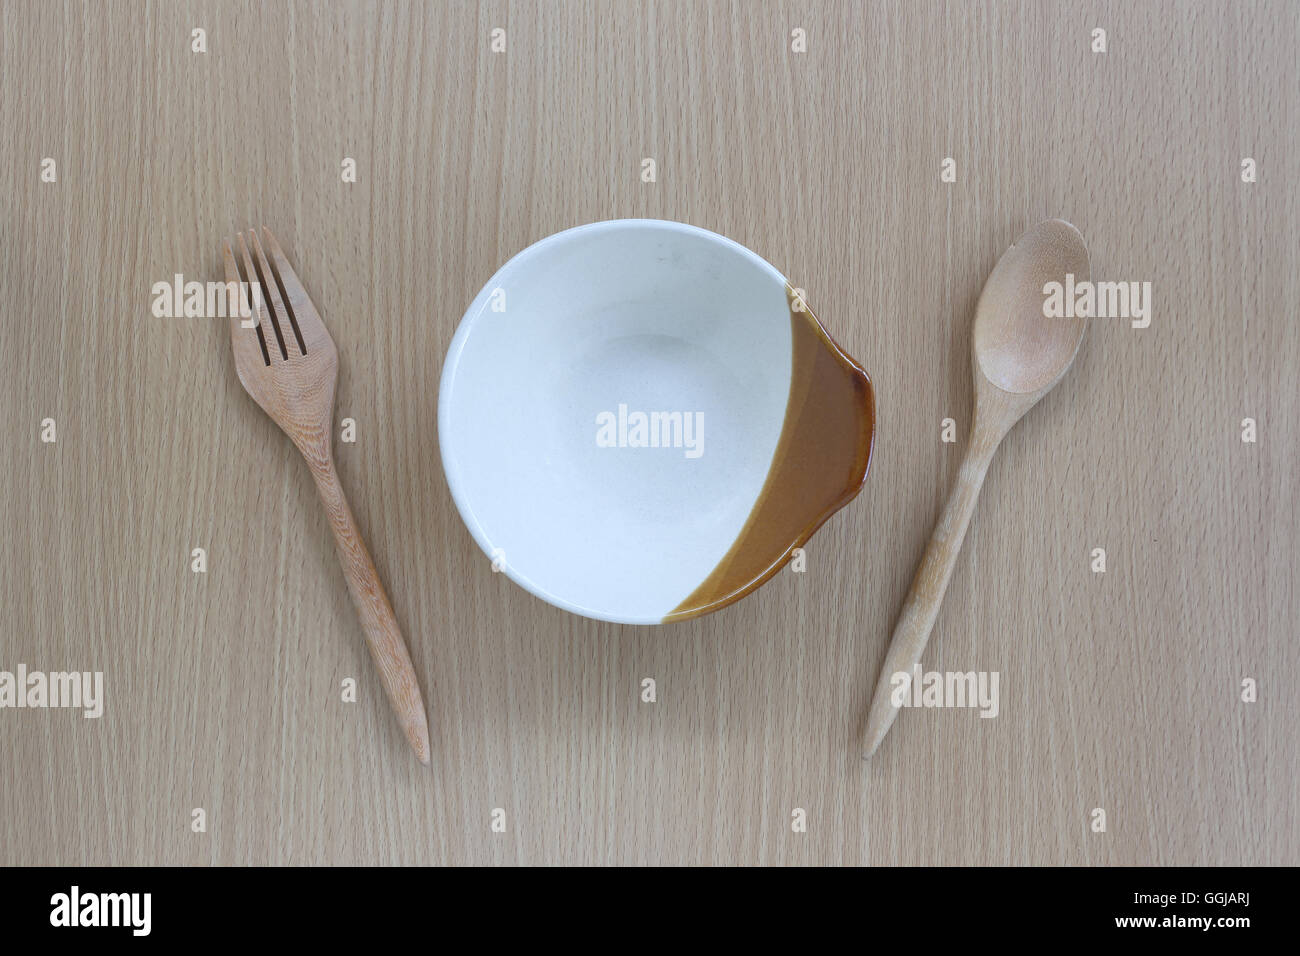 Hölzerne Löffel, Gabel und Teller in der Draufsicht auf Holz Hintergrund für Design-Konzept Essen. Stockfoto